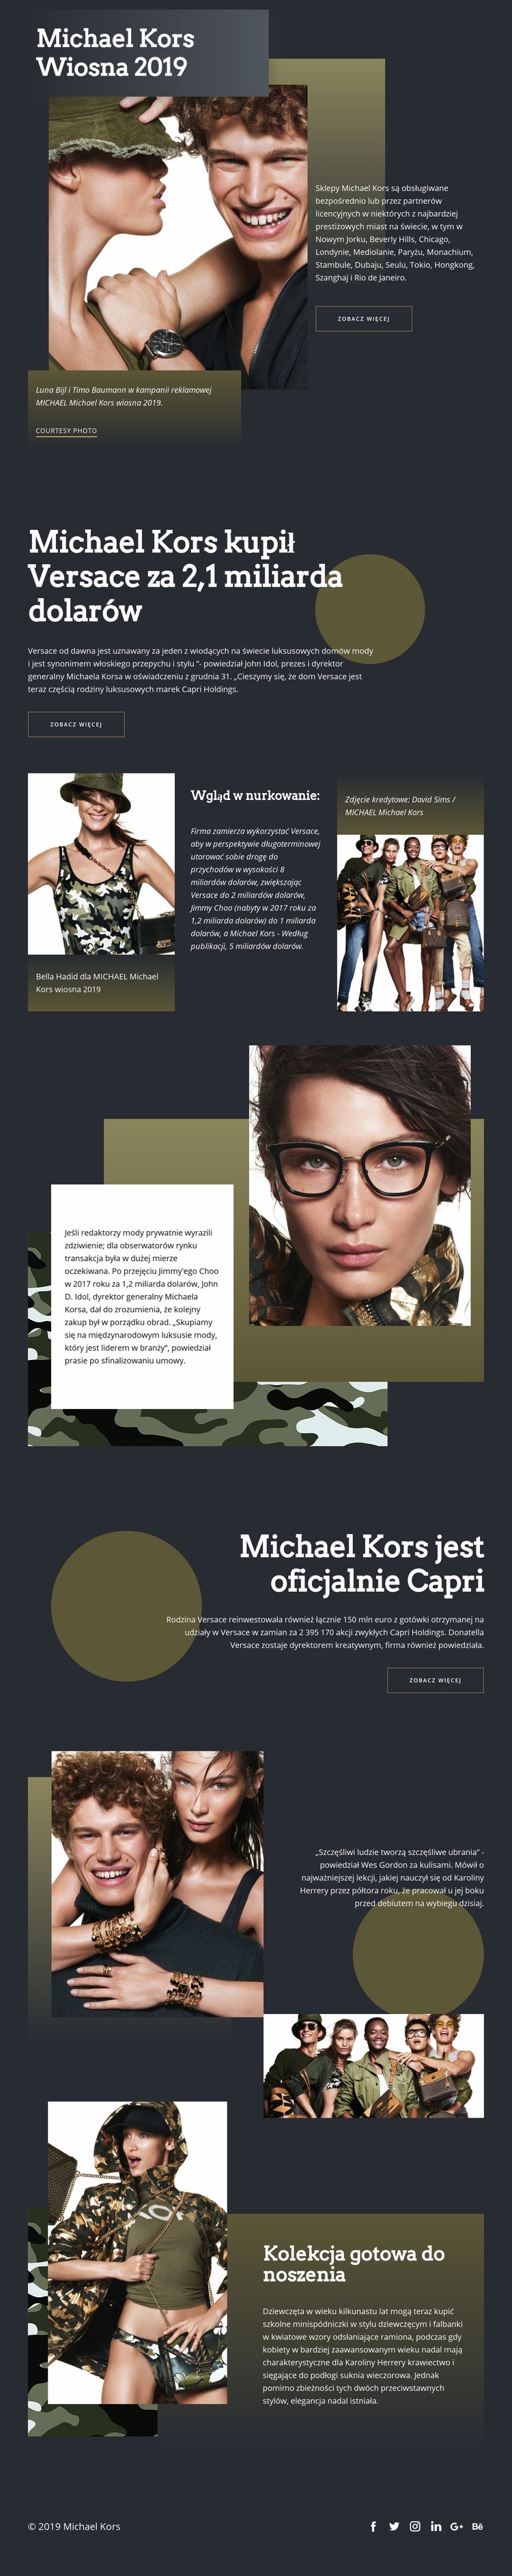 Michael Kors Dark Makieta strony internetowej